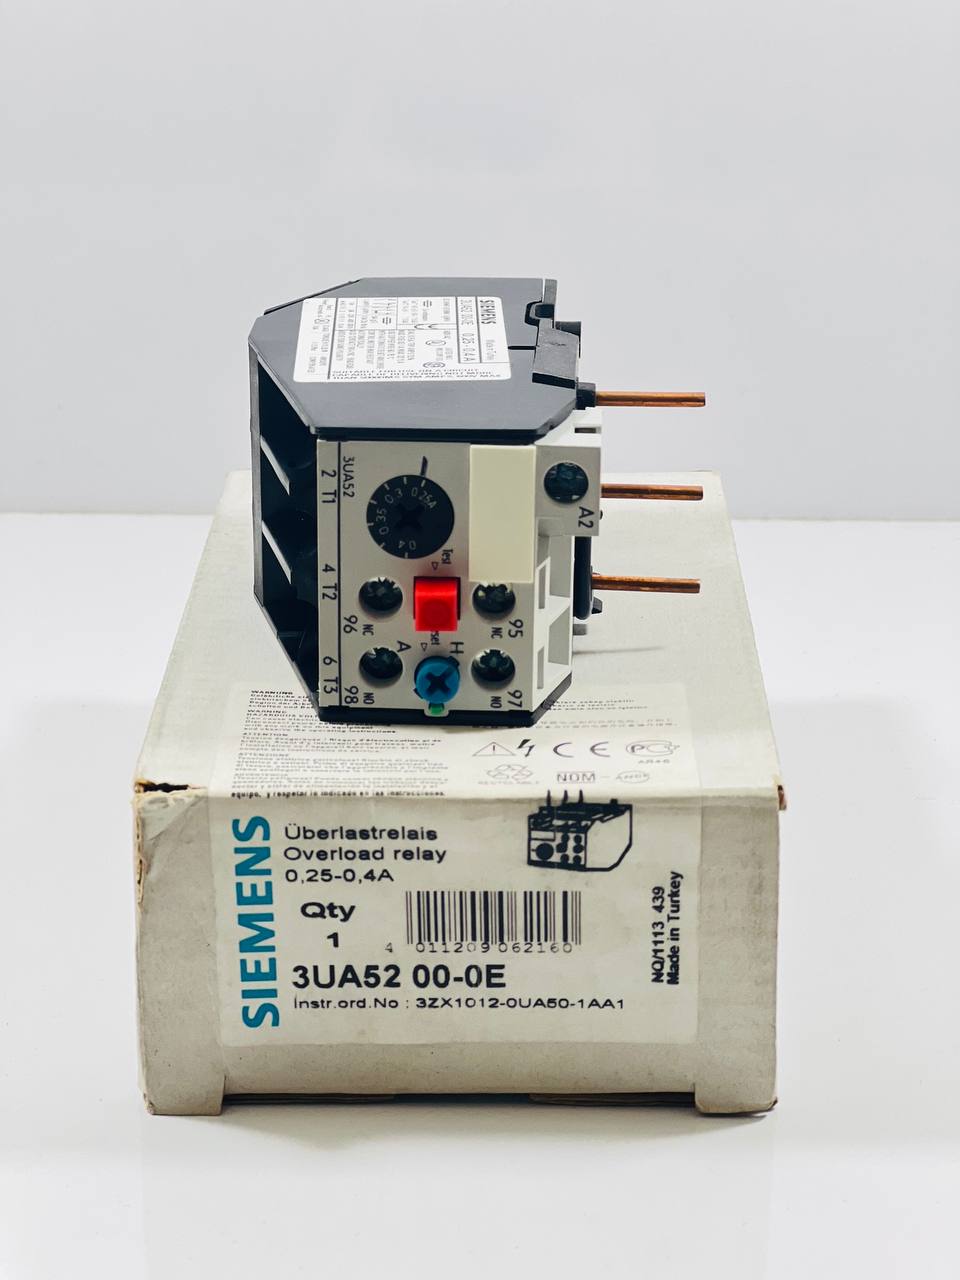 Siemens 3UA5200-0E